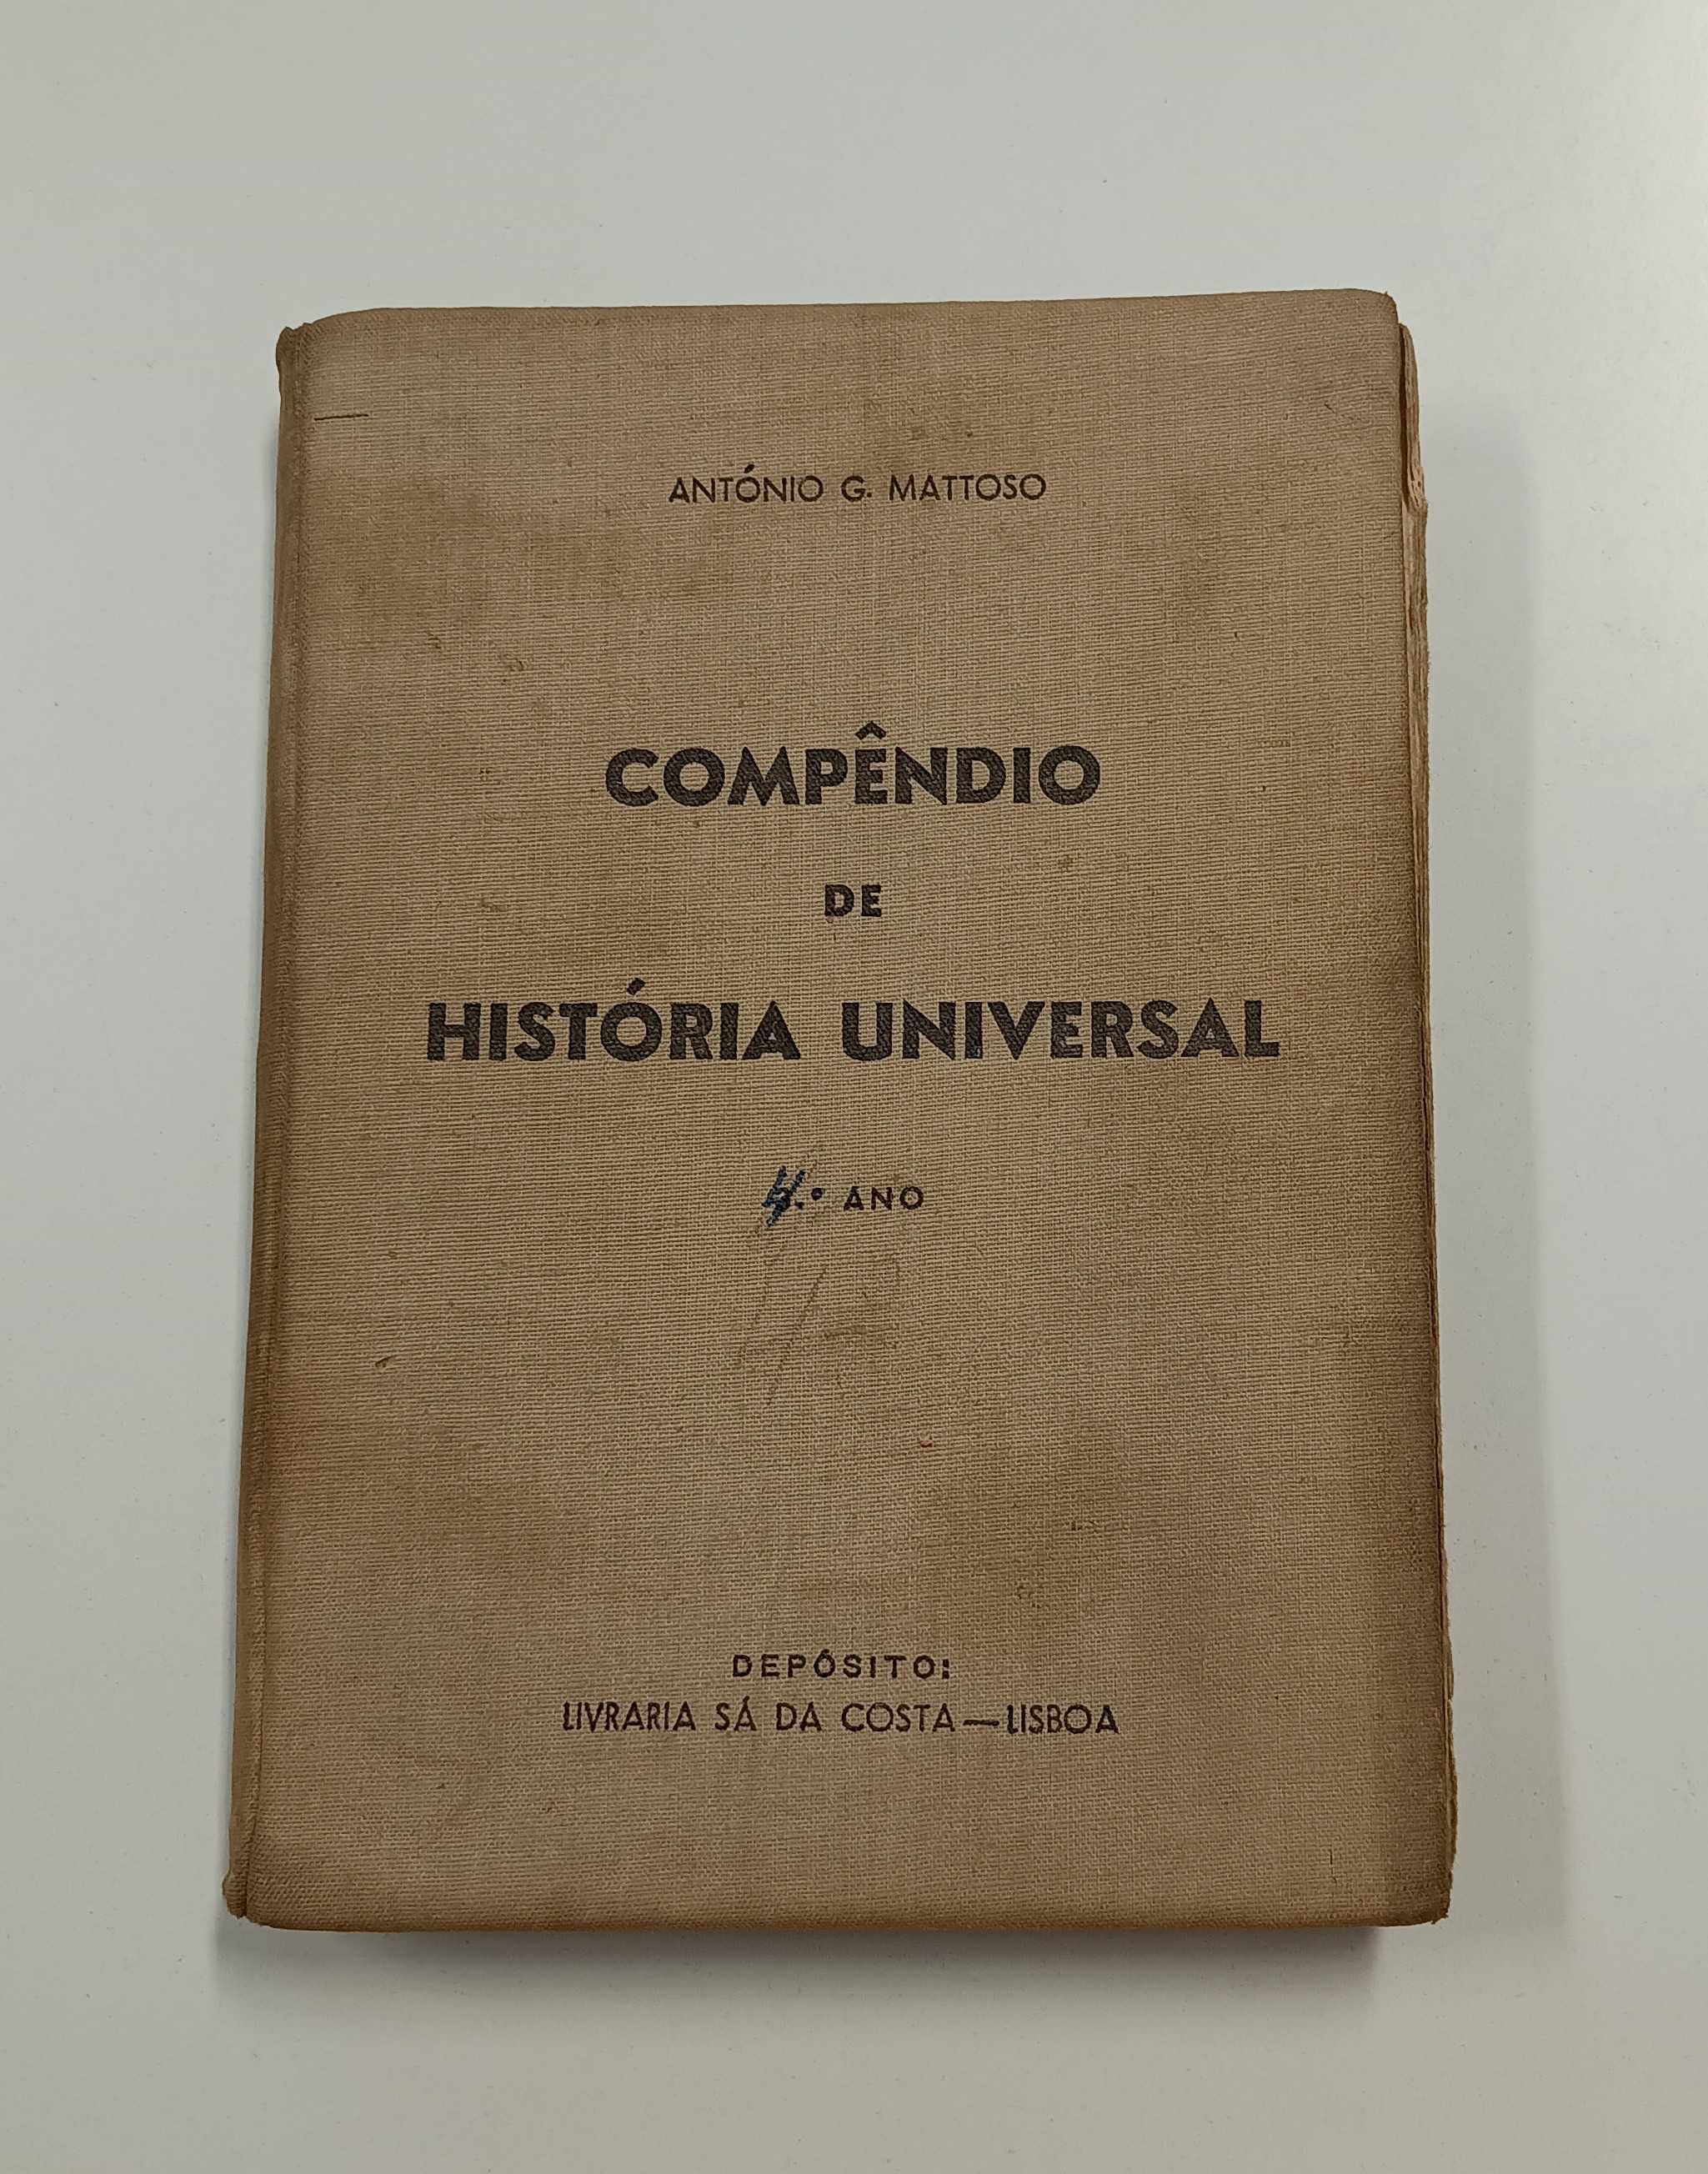 Compêndio de História Universal, de António G. Mattoso